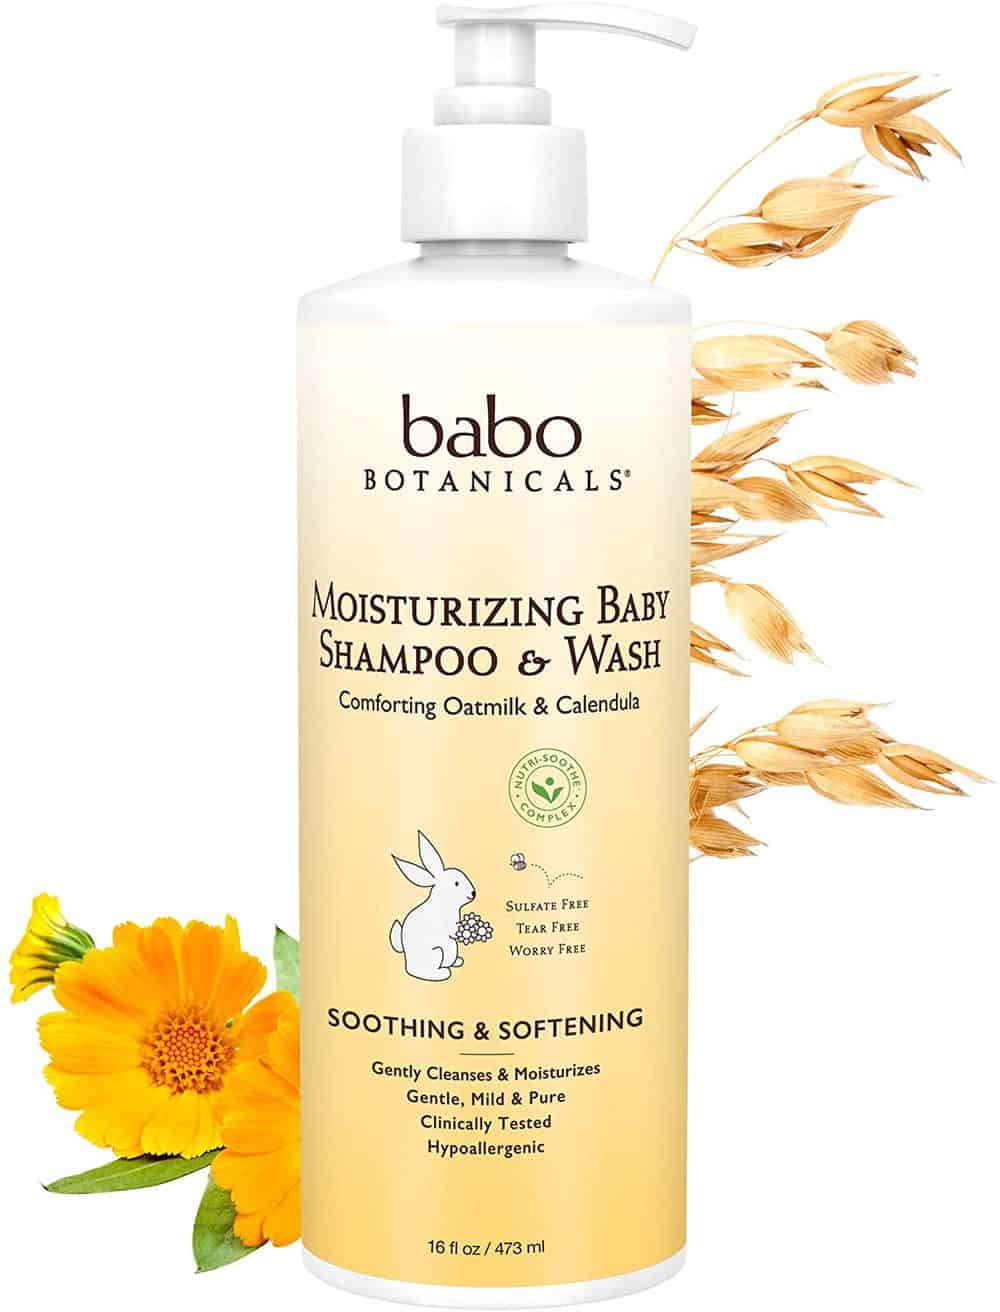 Product Image of the Babo Botanicals Moisturizing Plant-Based 2-in-1 Shampoo & Wash